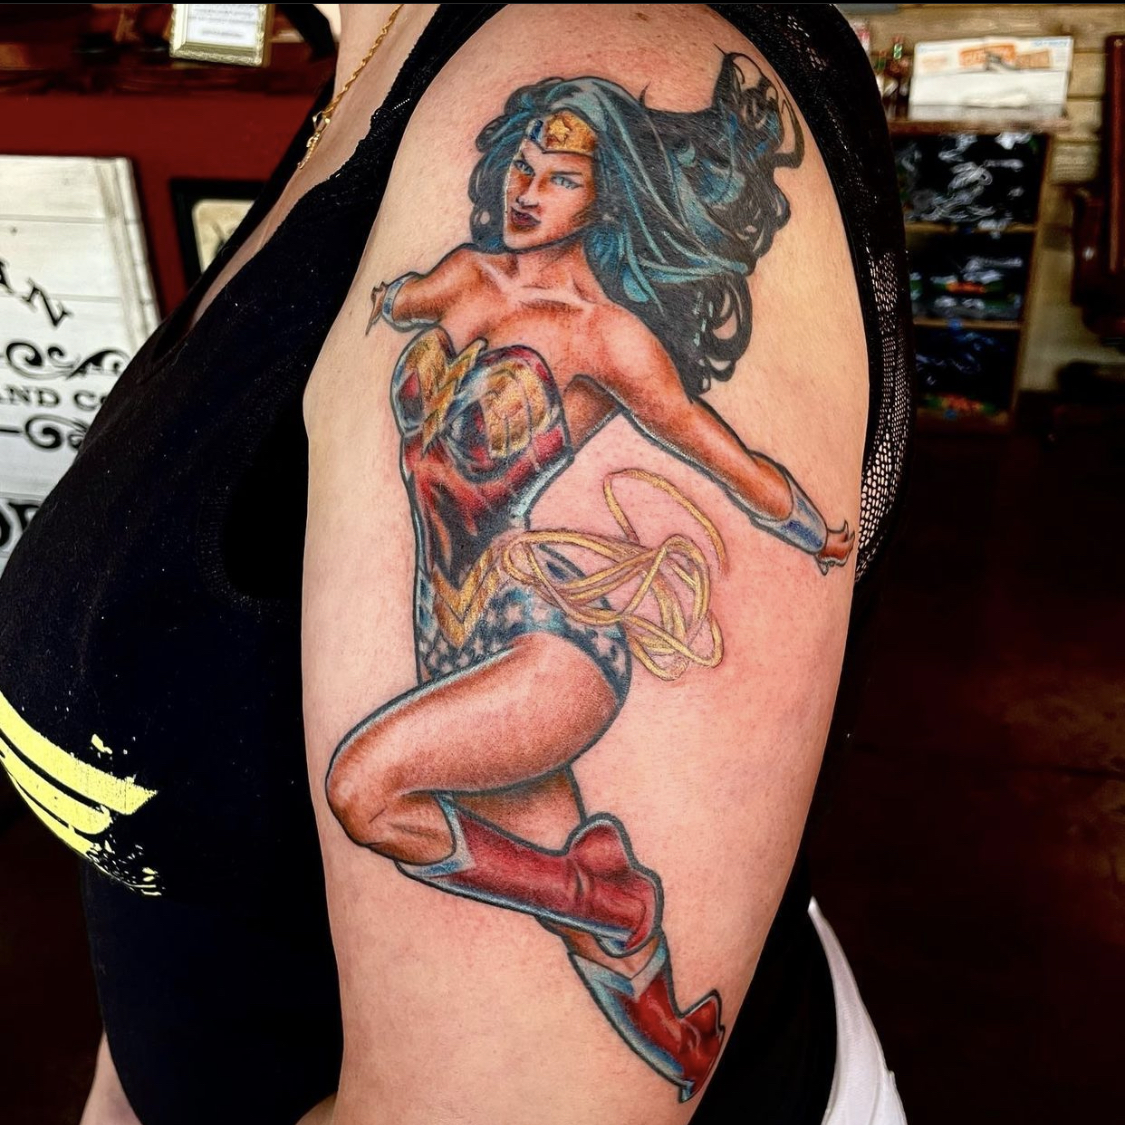 tattoo of wonder woman from best tattoo shops in dallas tx